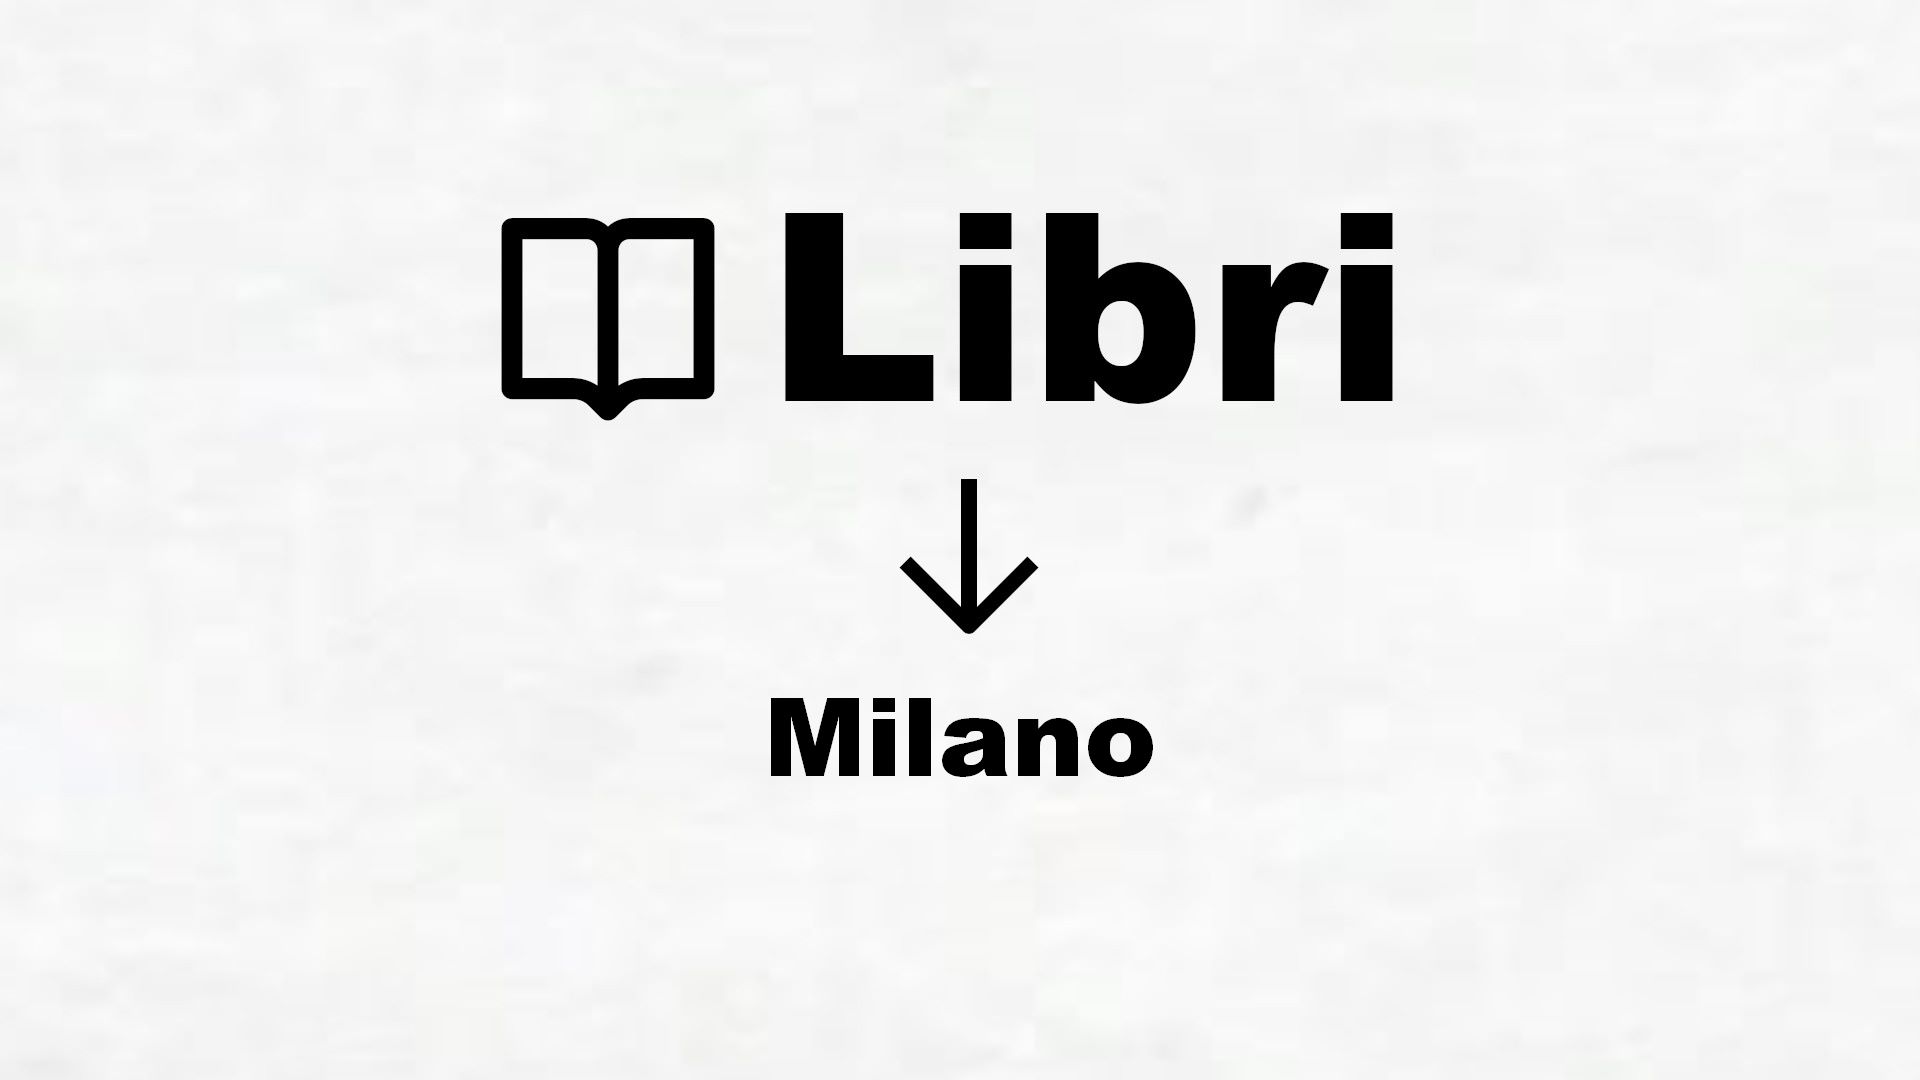 Libri su Milano